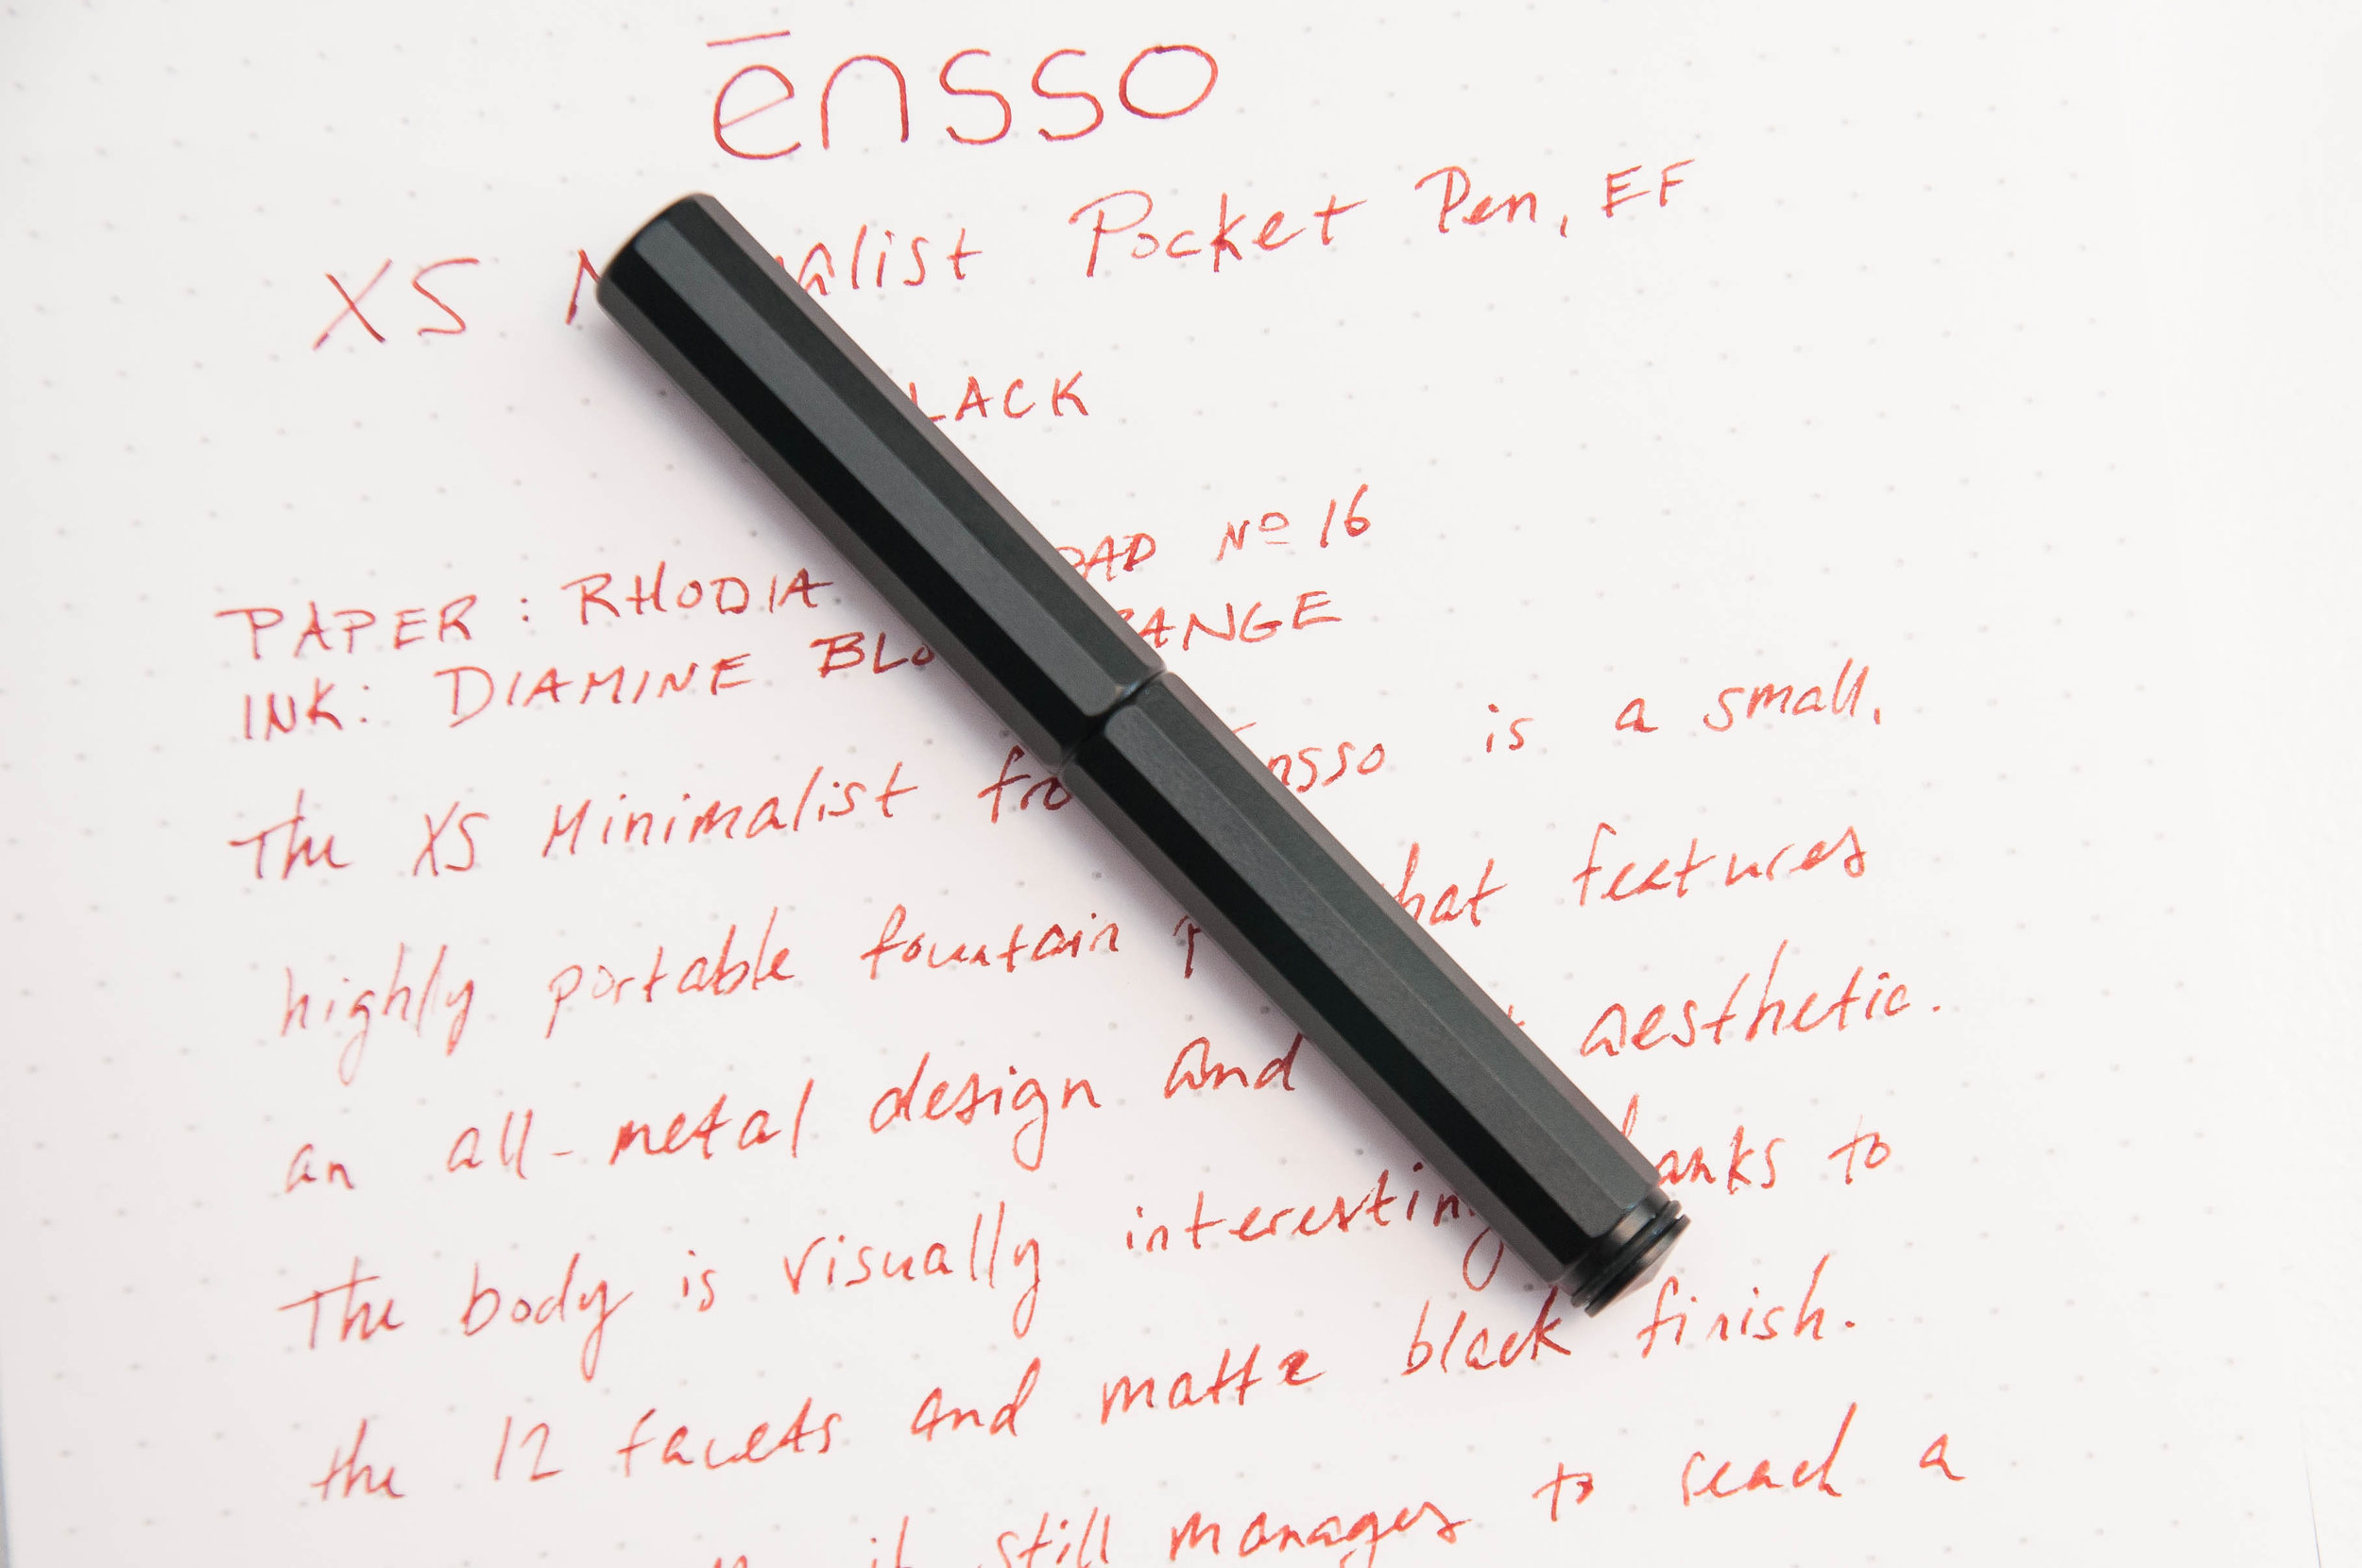 Ontwarren Vanaf daar Wijzerplaat ensso XS Minimalist Pocket Fountain Pen Review — The Pen Addict